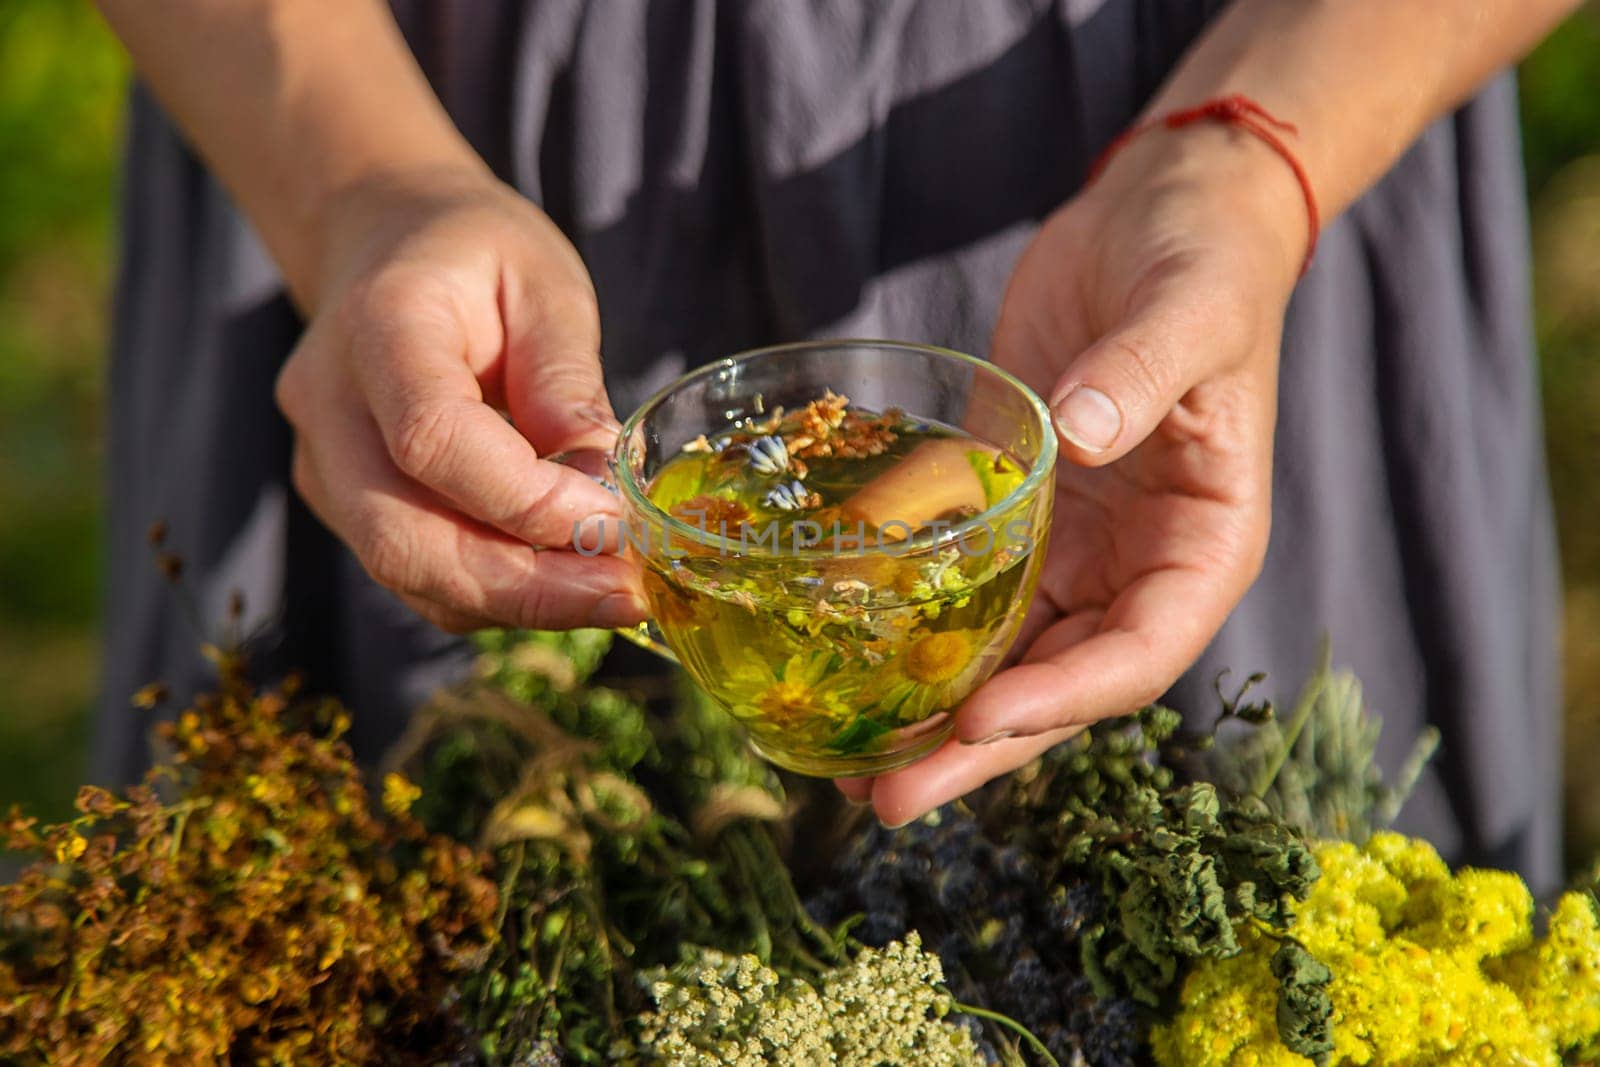 A woman brews herbal tea. Selective focus. Nature.